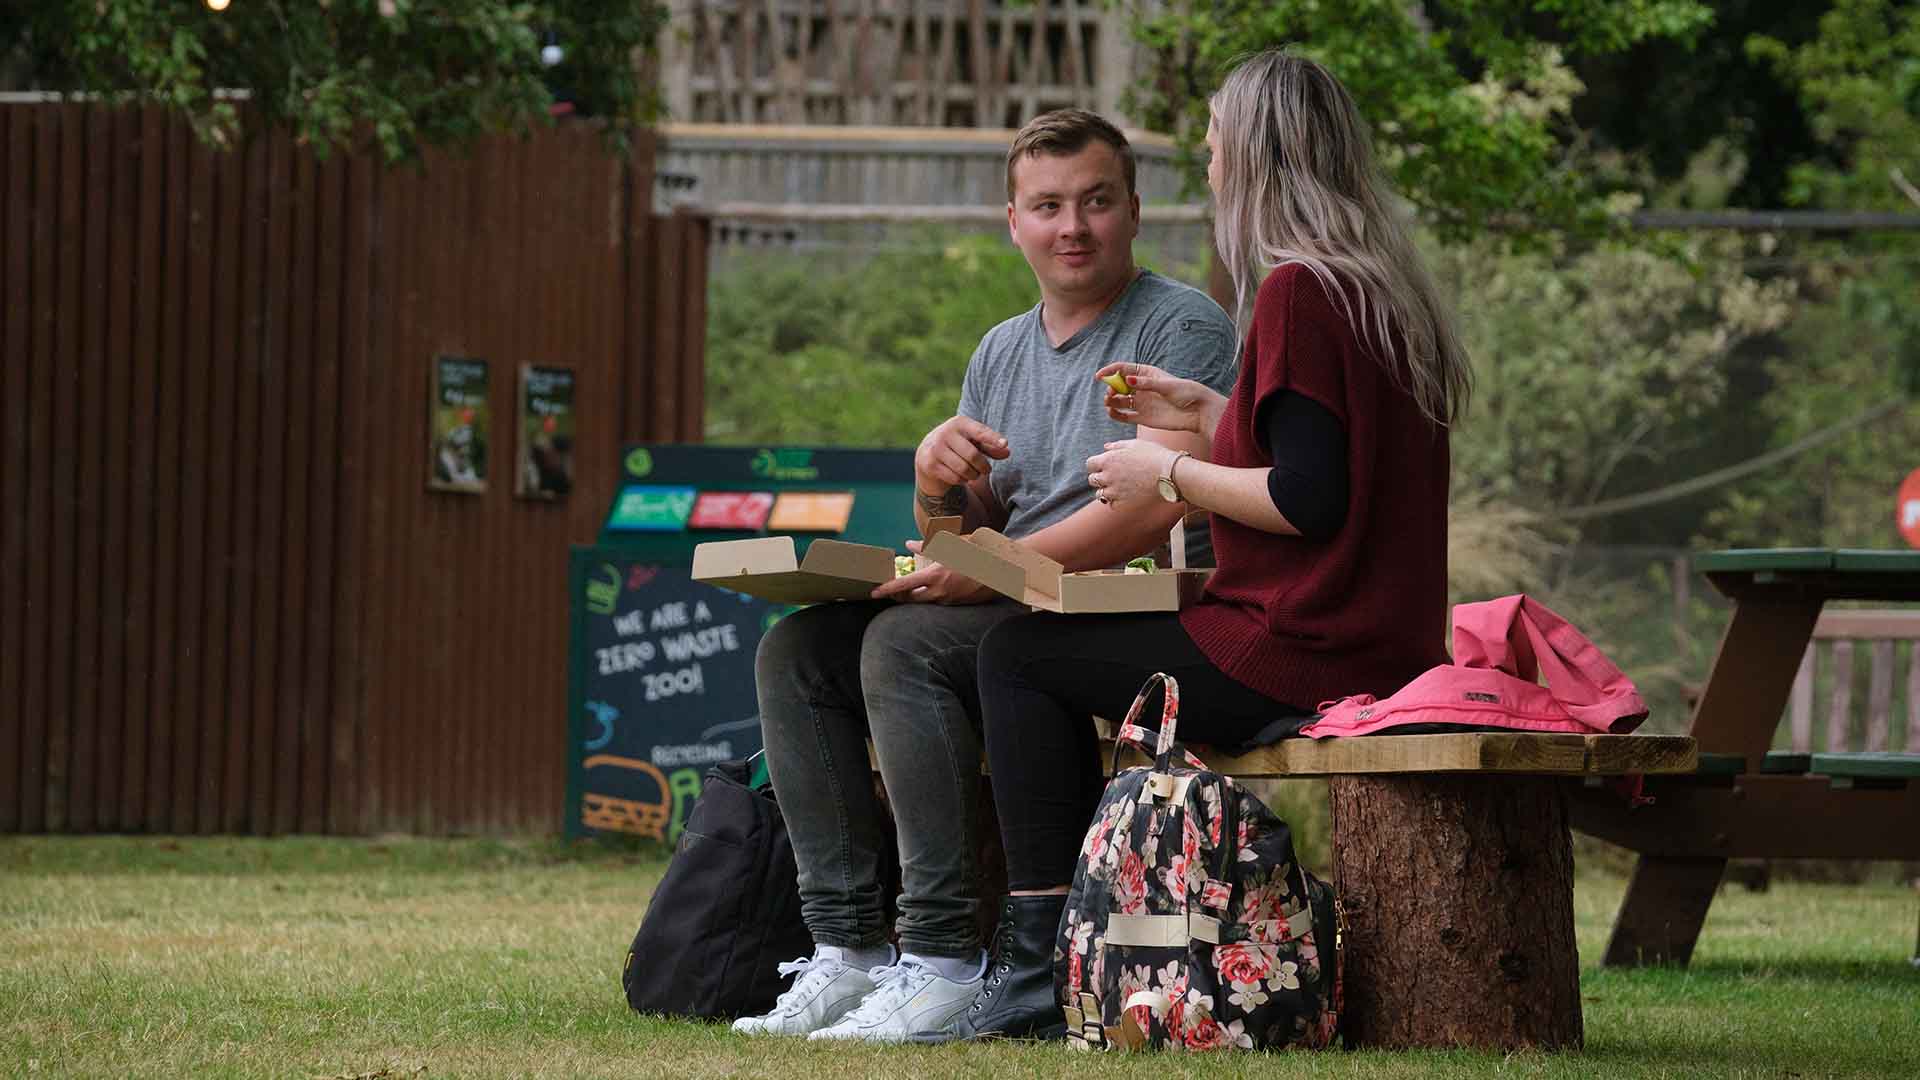 Couple enjoy picnic outside IMAGE: Robin Mair 2022